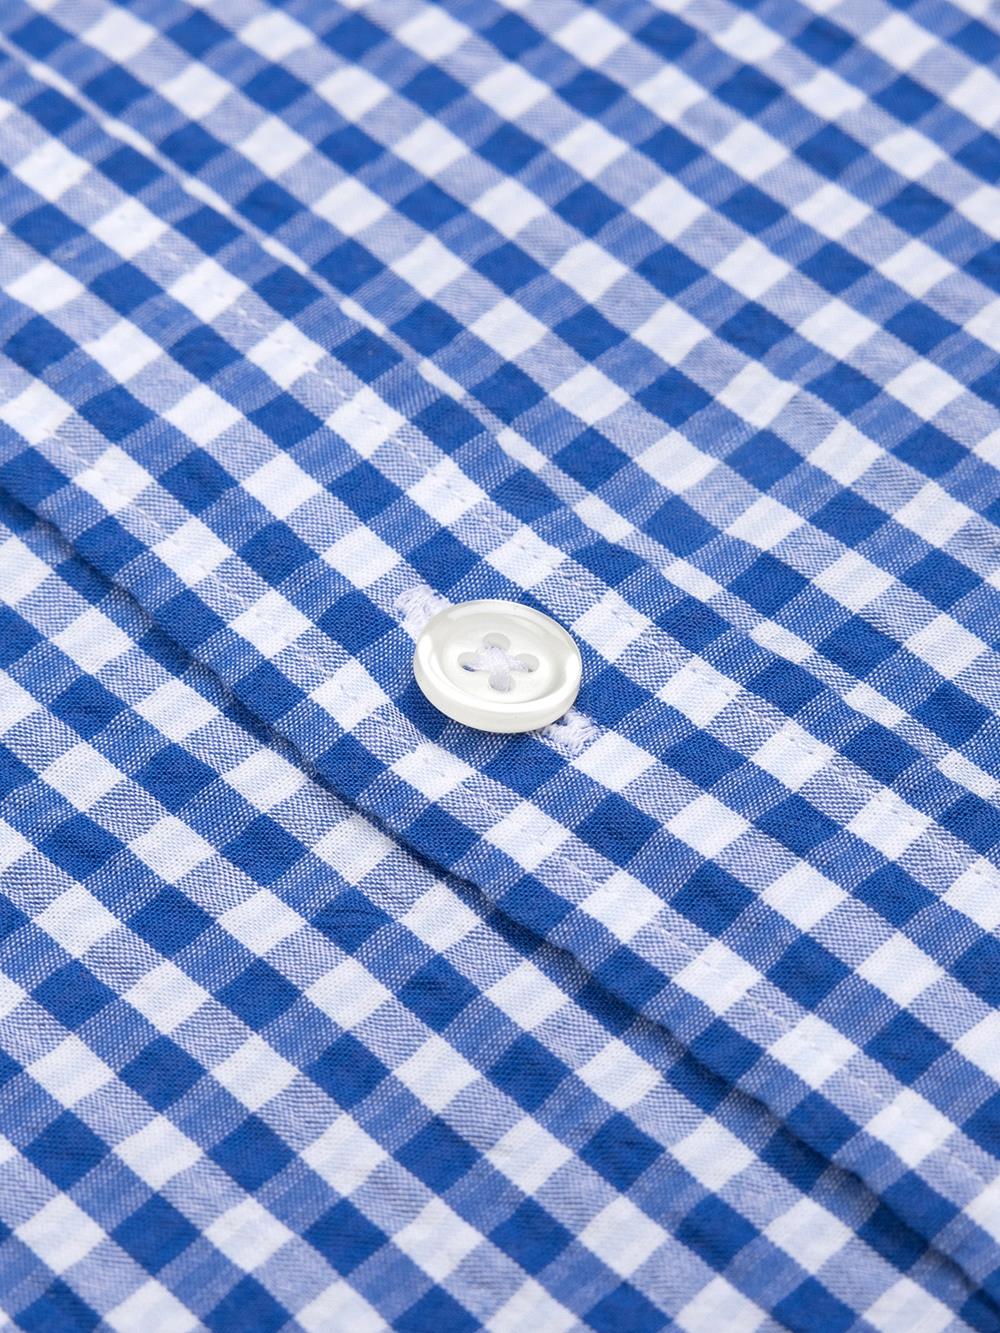 Camisa Jaiden en seersucker azul - Con buttoncini